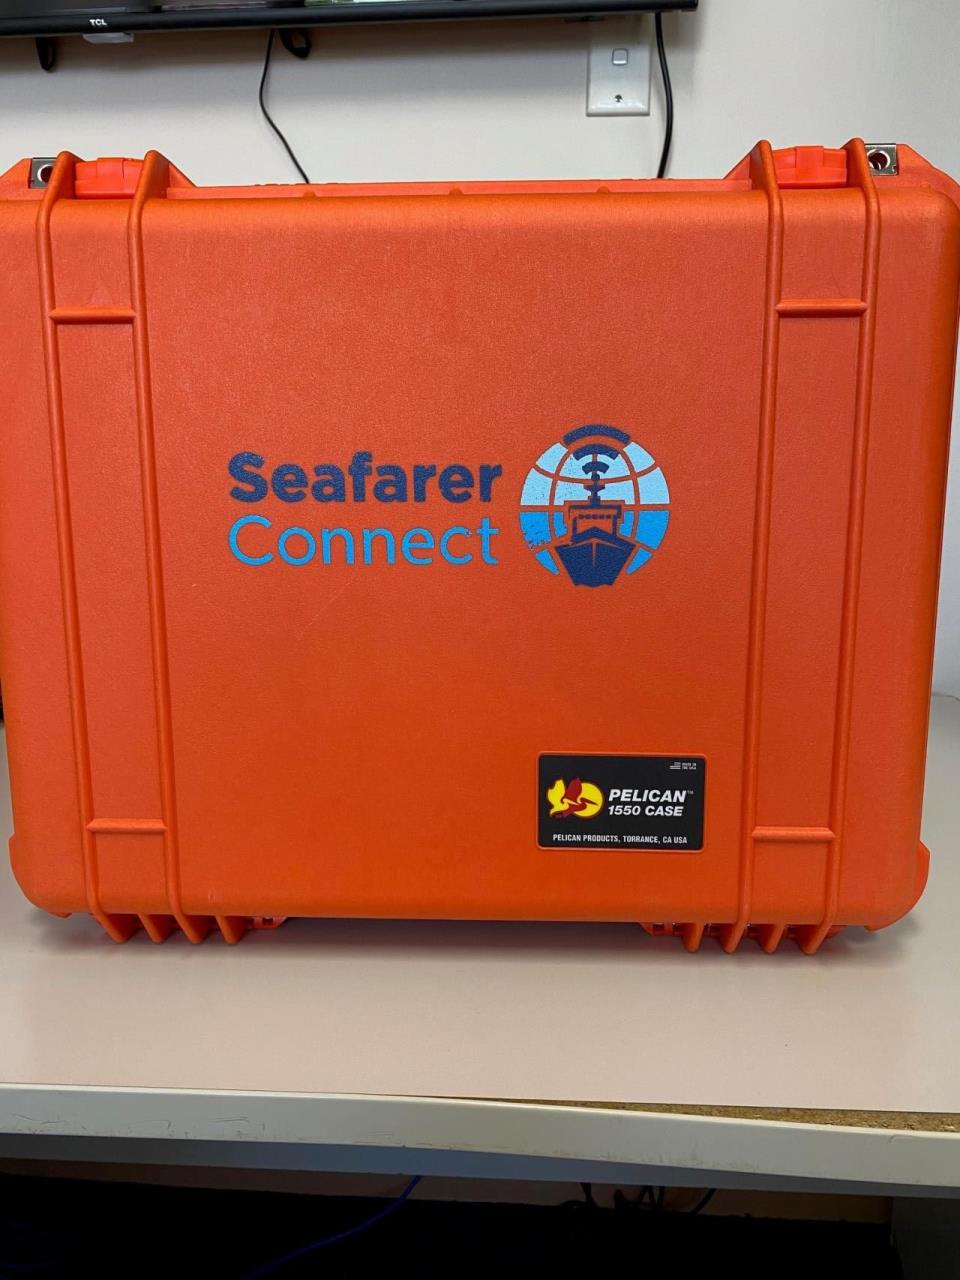 Orange case labelled Seafarer Connect